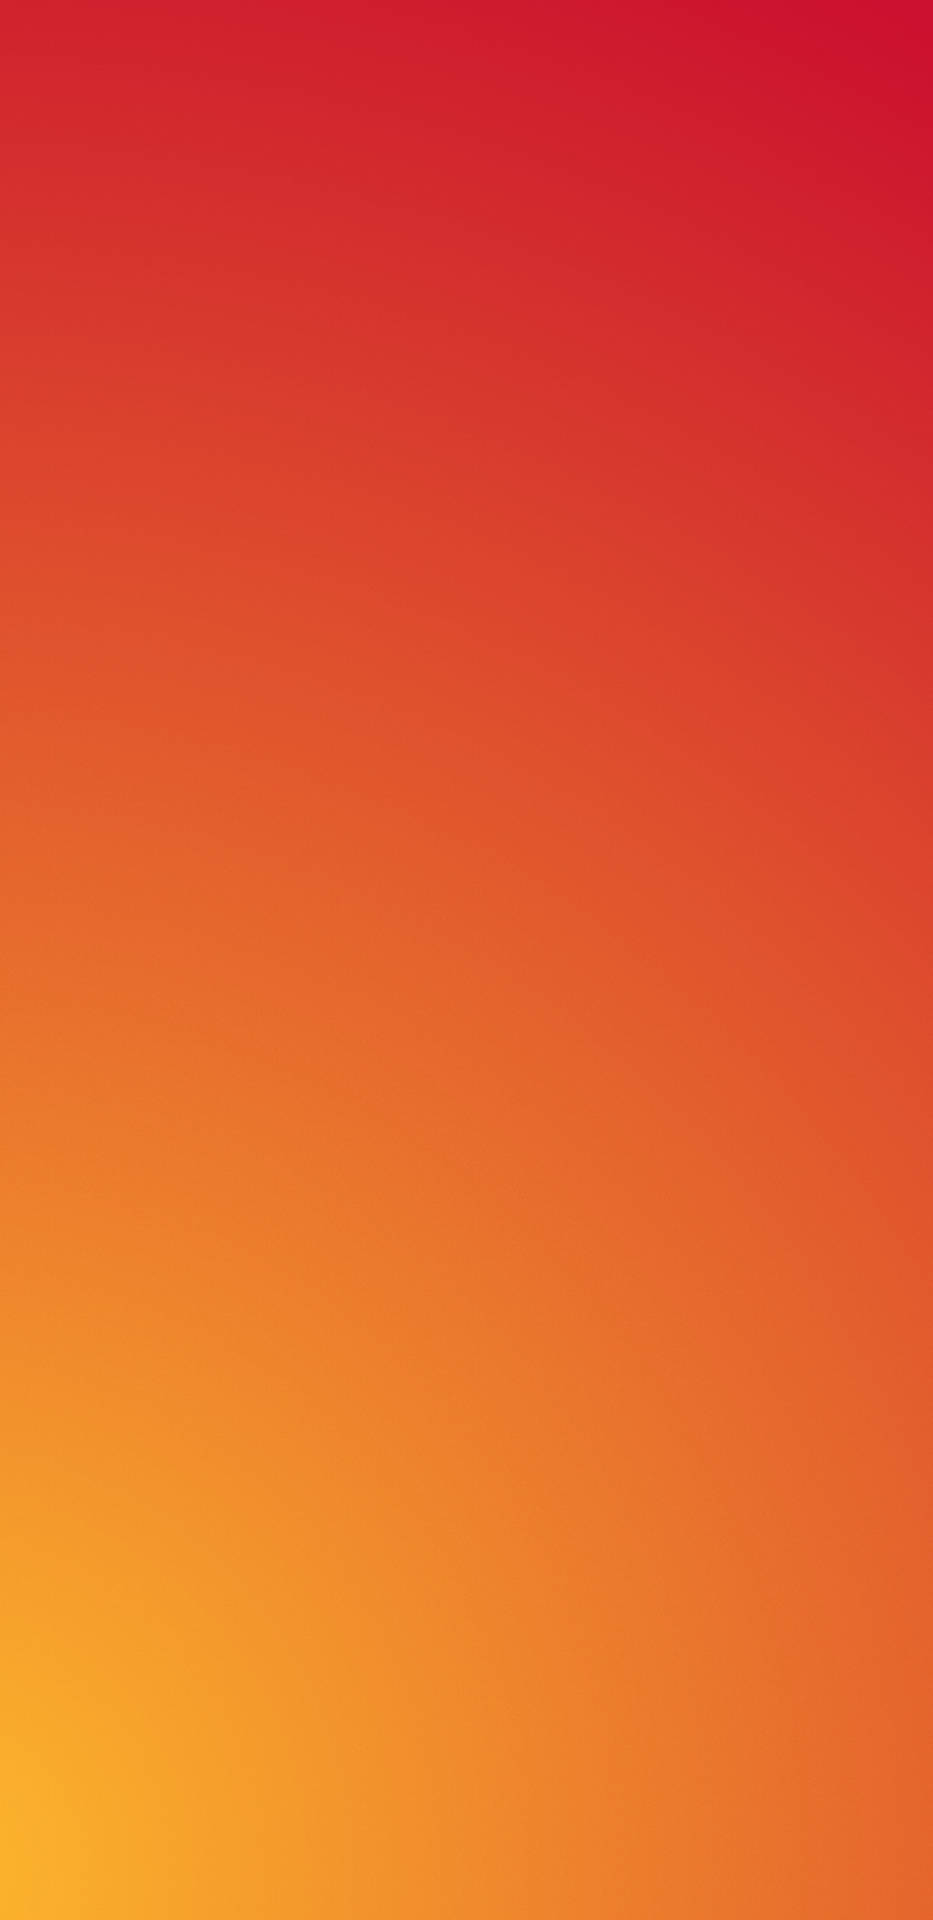 Einfarbigesrotes Und Oranges Iphone Wallpaper